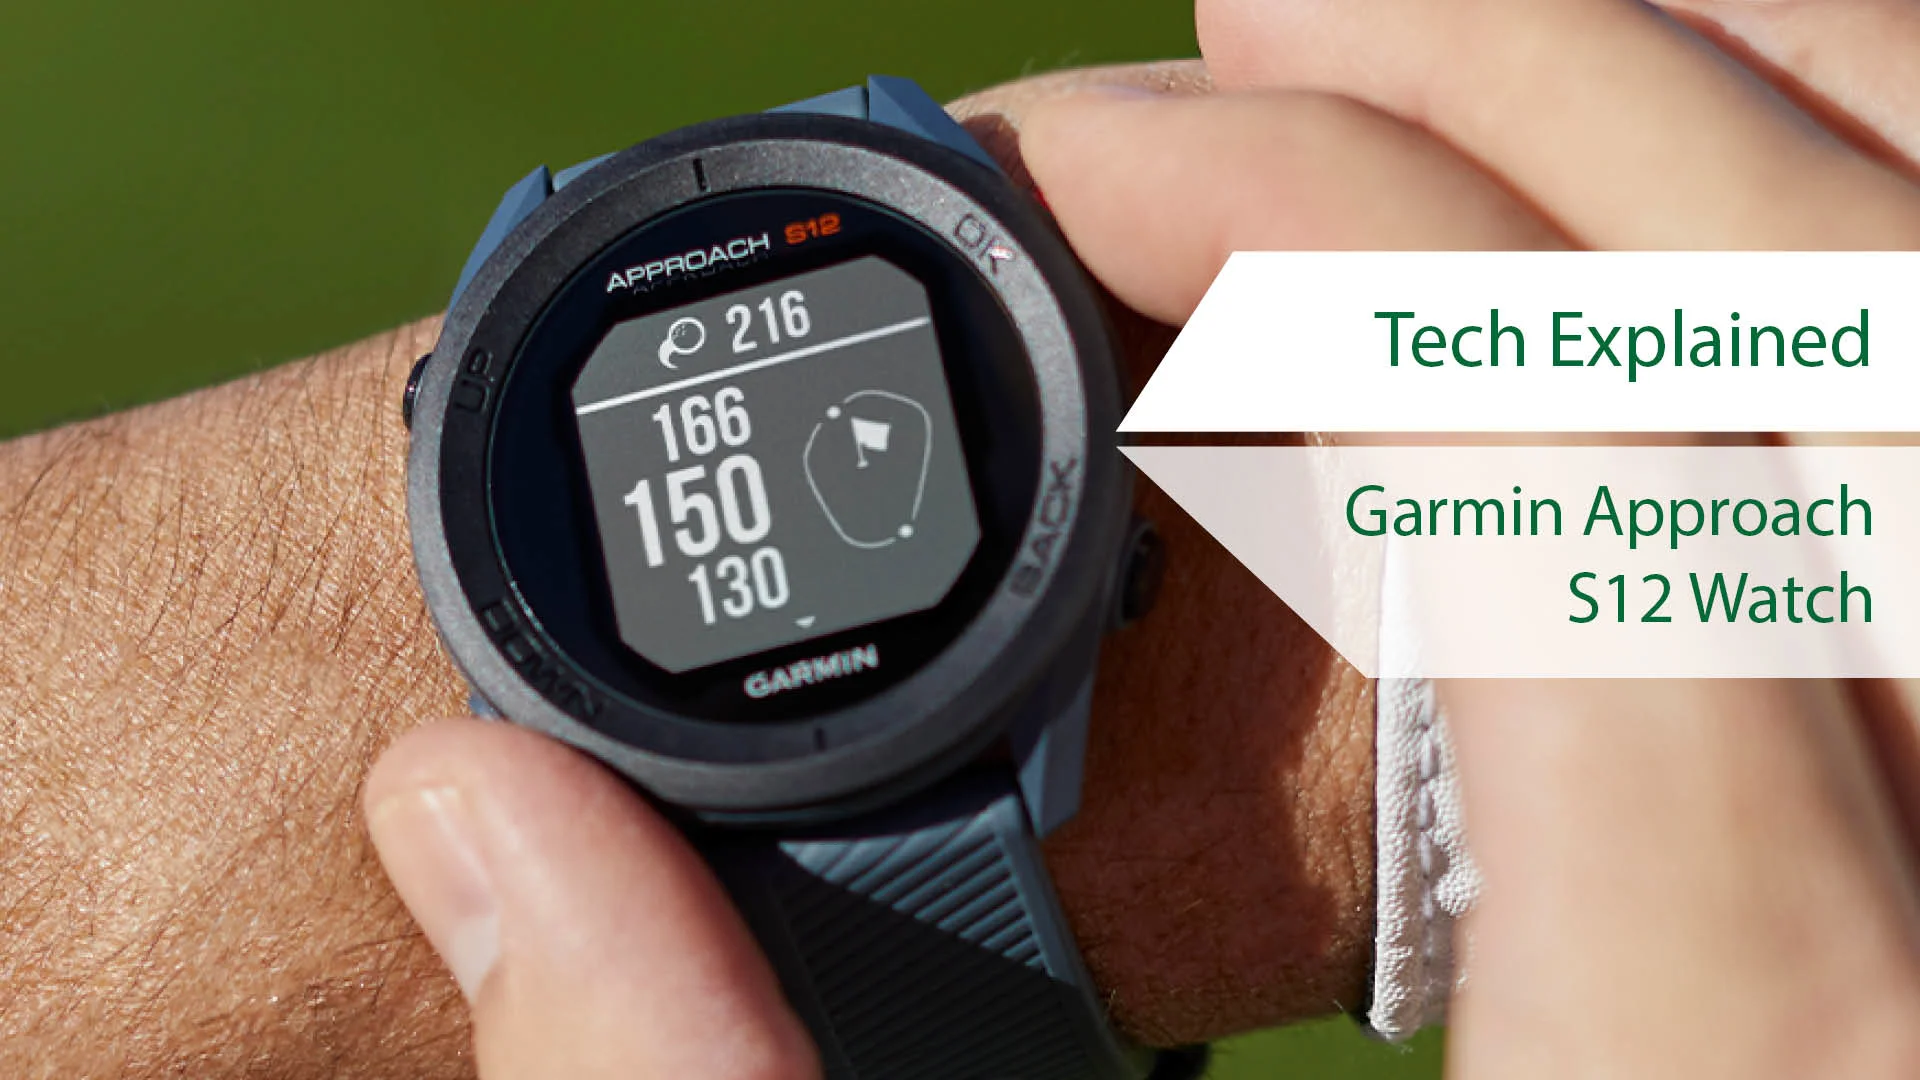 Garmin Approach S12 Watch - Tech Explained